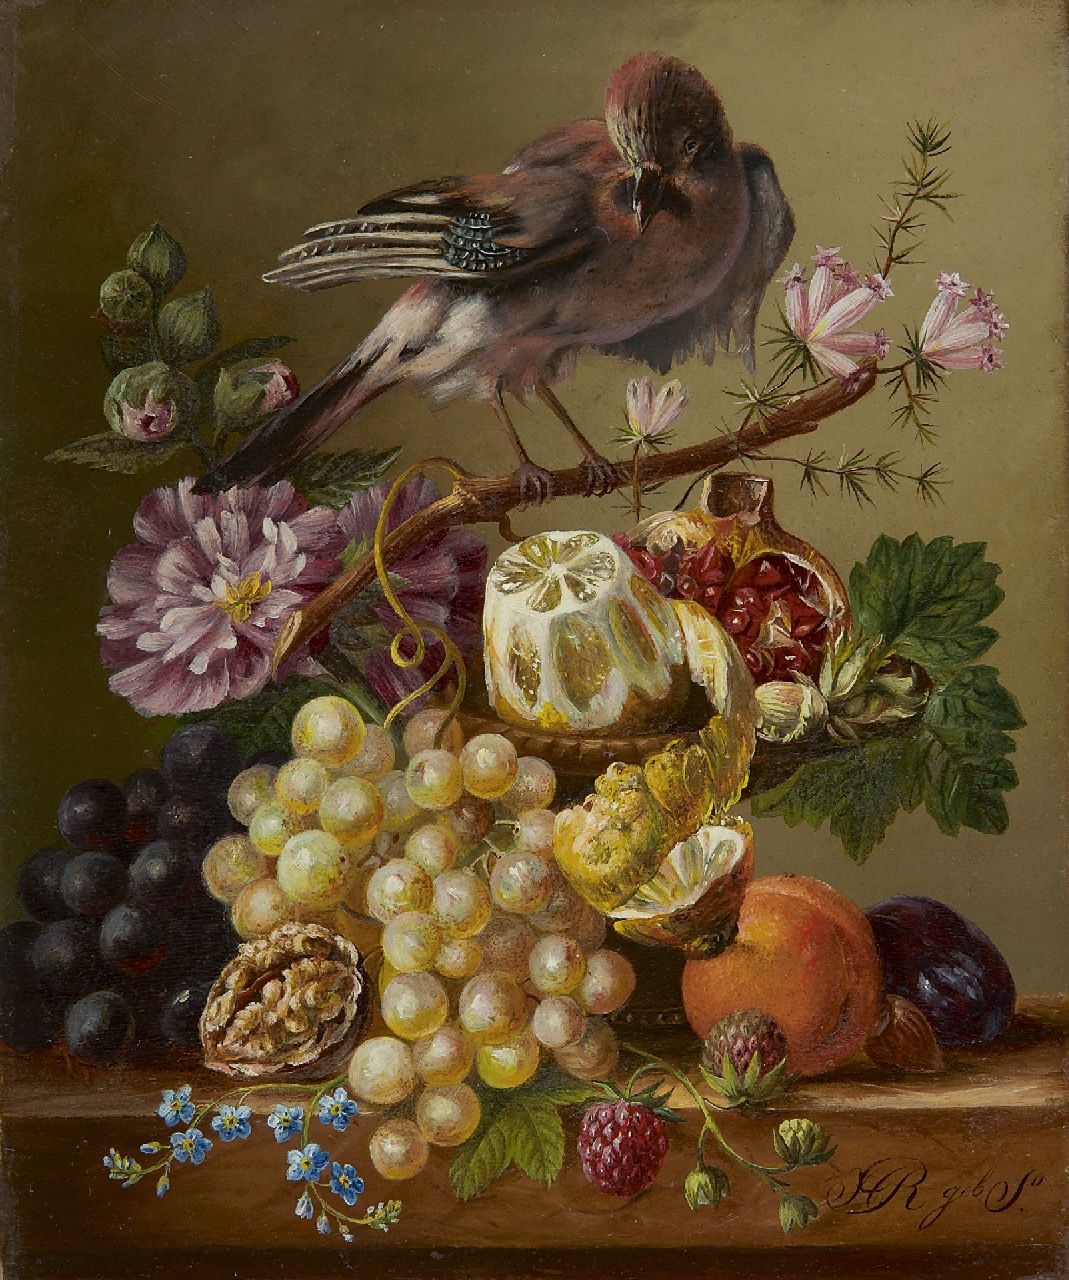 Onbekend   | Onbekend | Schilderijen te koop aangeboden | Stilleven met vruchten en Vlaamse Gaai op een tak, olieverf op paneel 21,5 x 18,0 cm, gesigneerd rechtsonder 'H R geboren S'